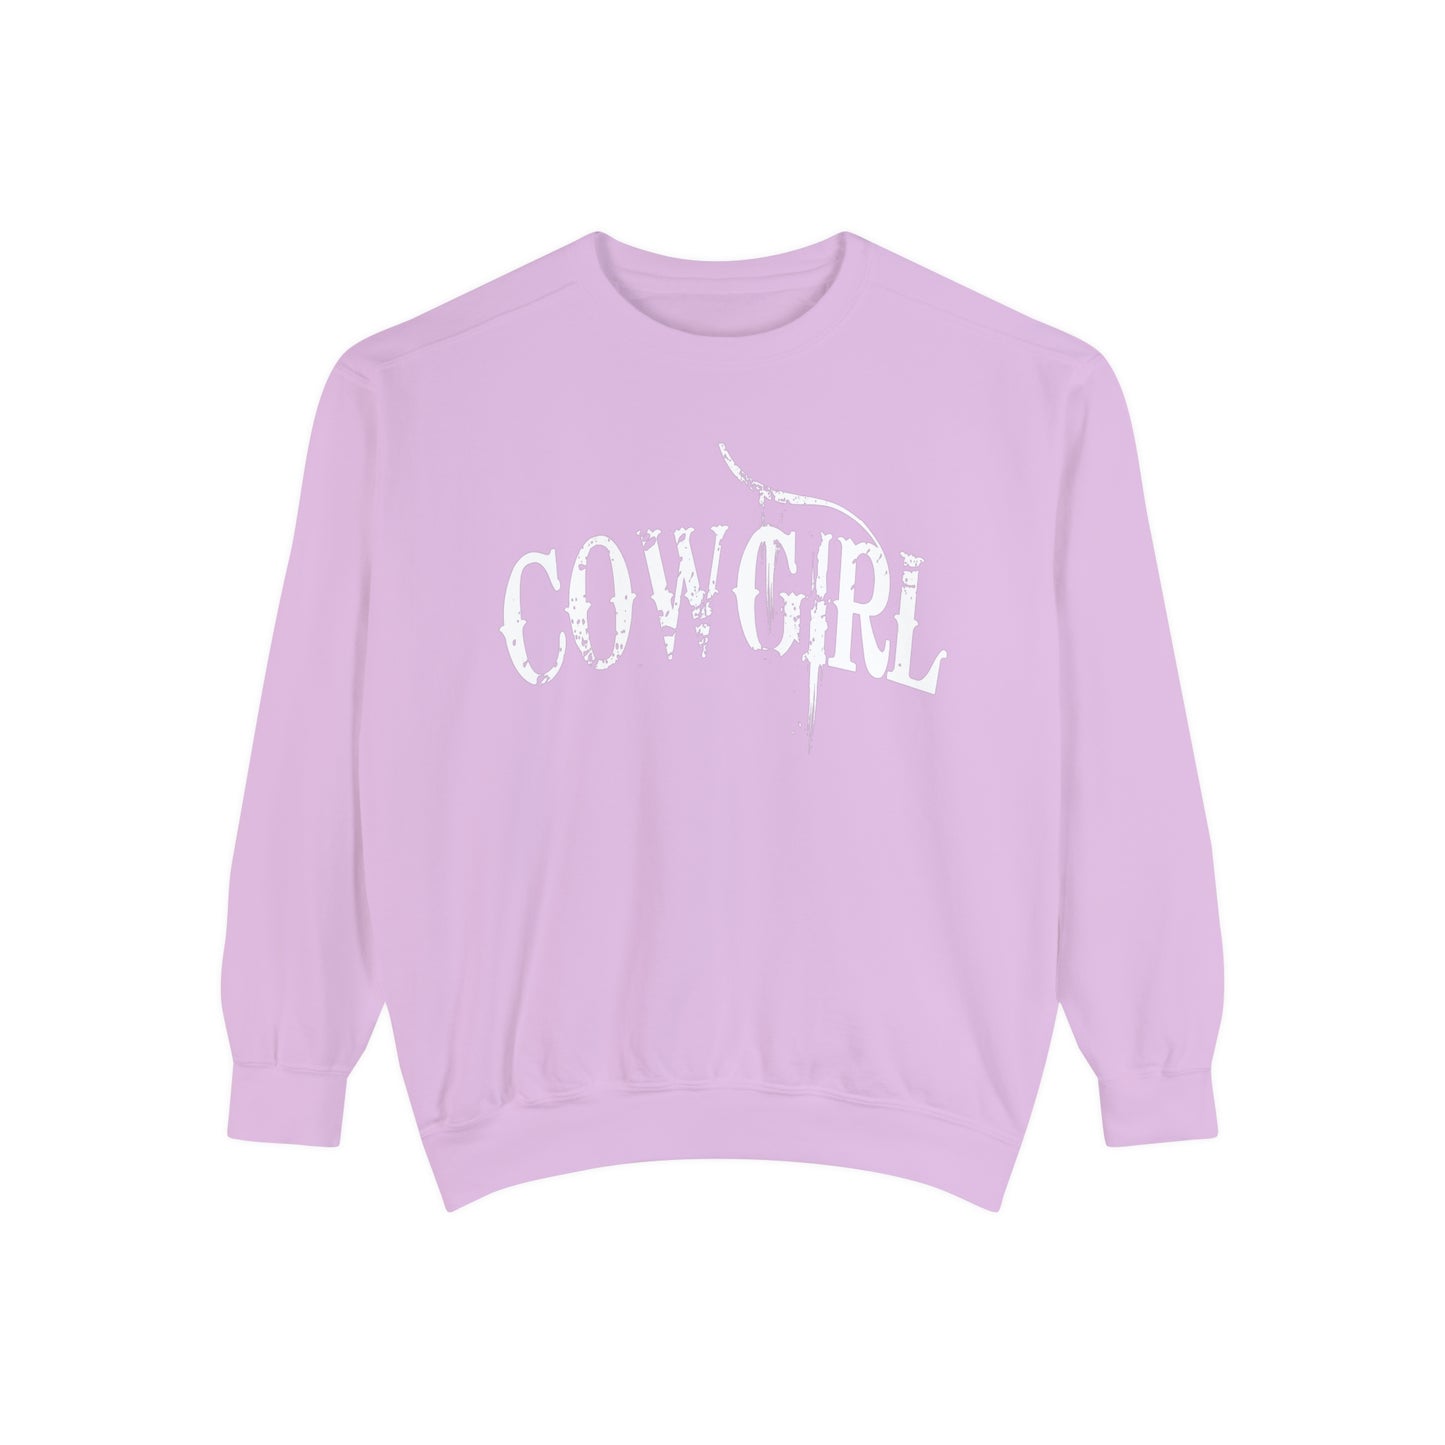 Cowgirl Sweatshirt